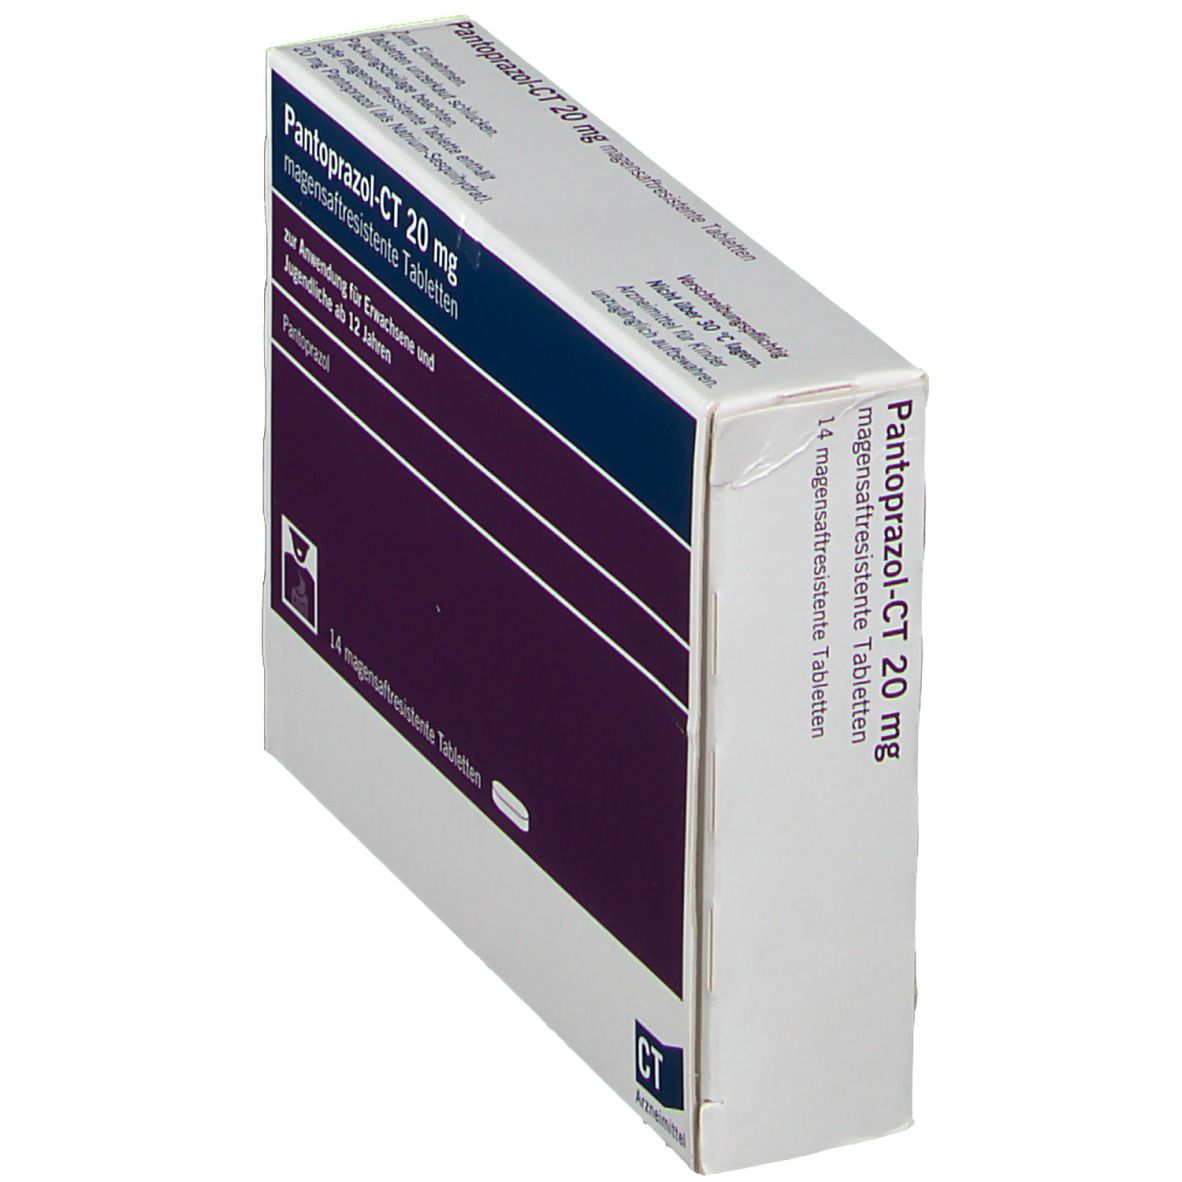 Pantoprazol-CT 20 mg